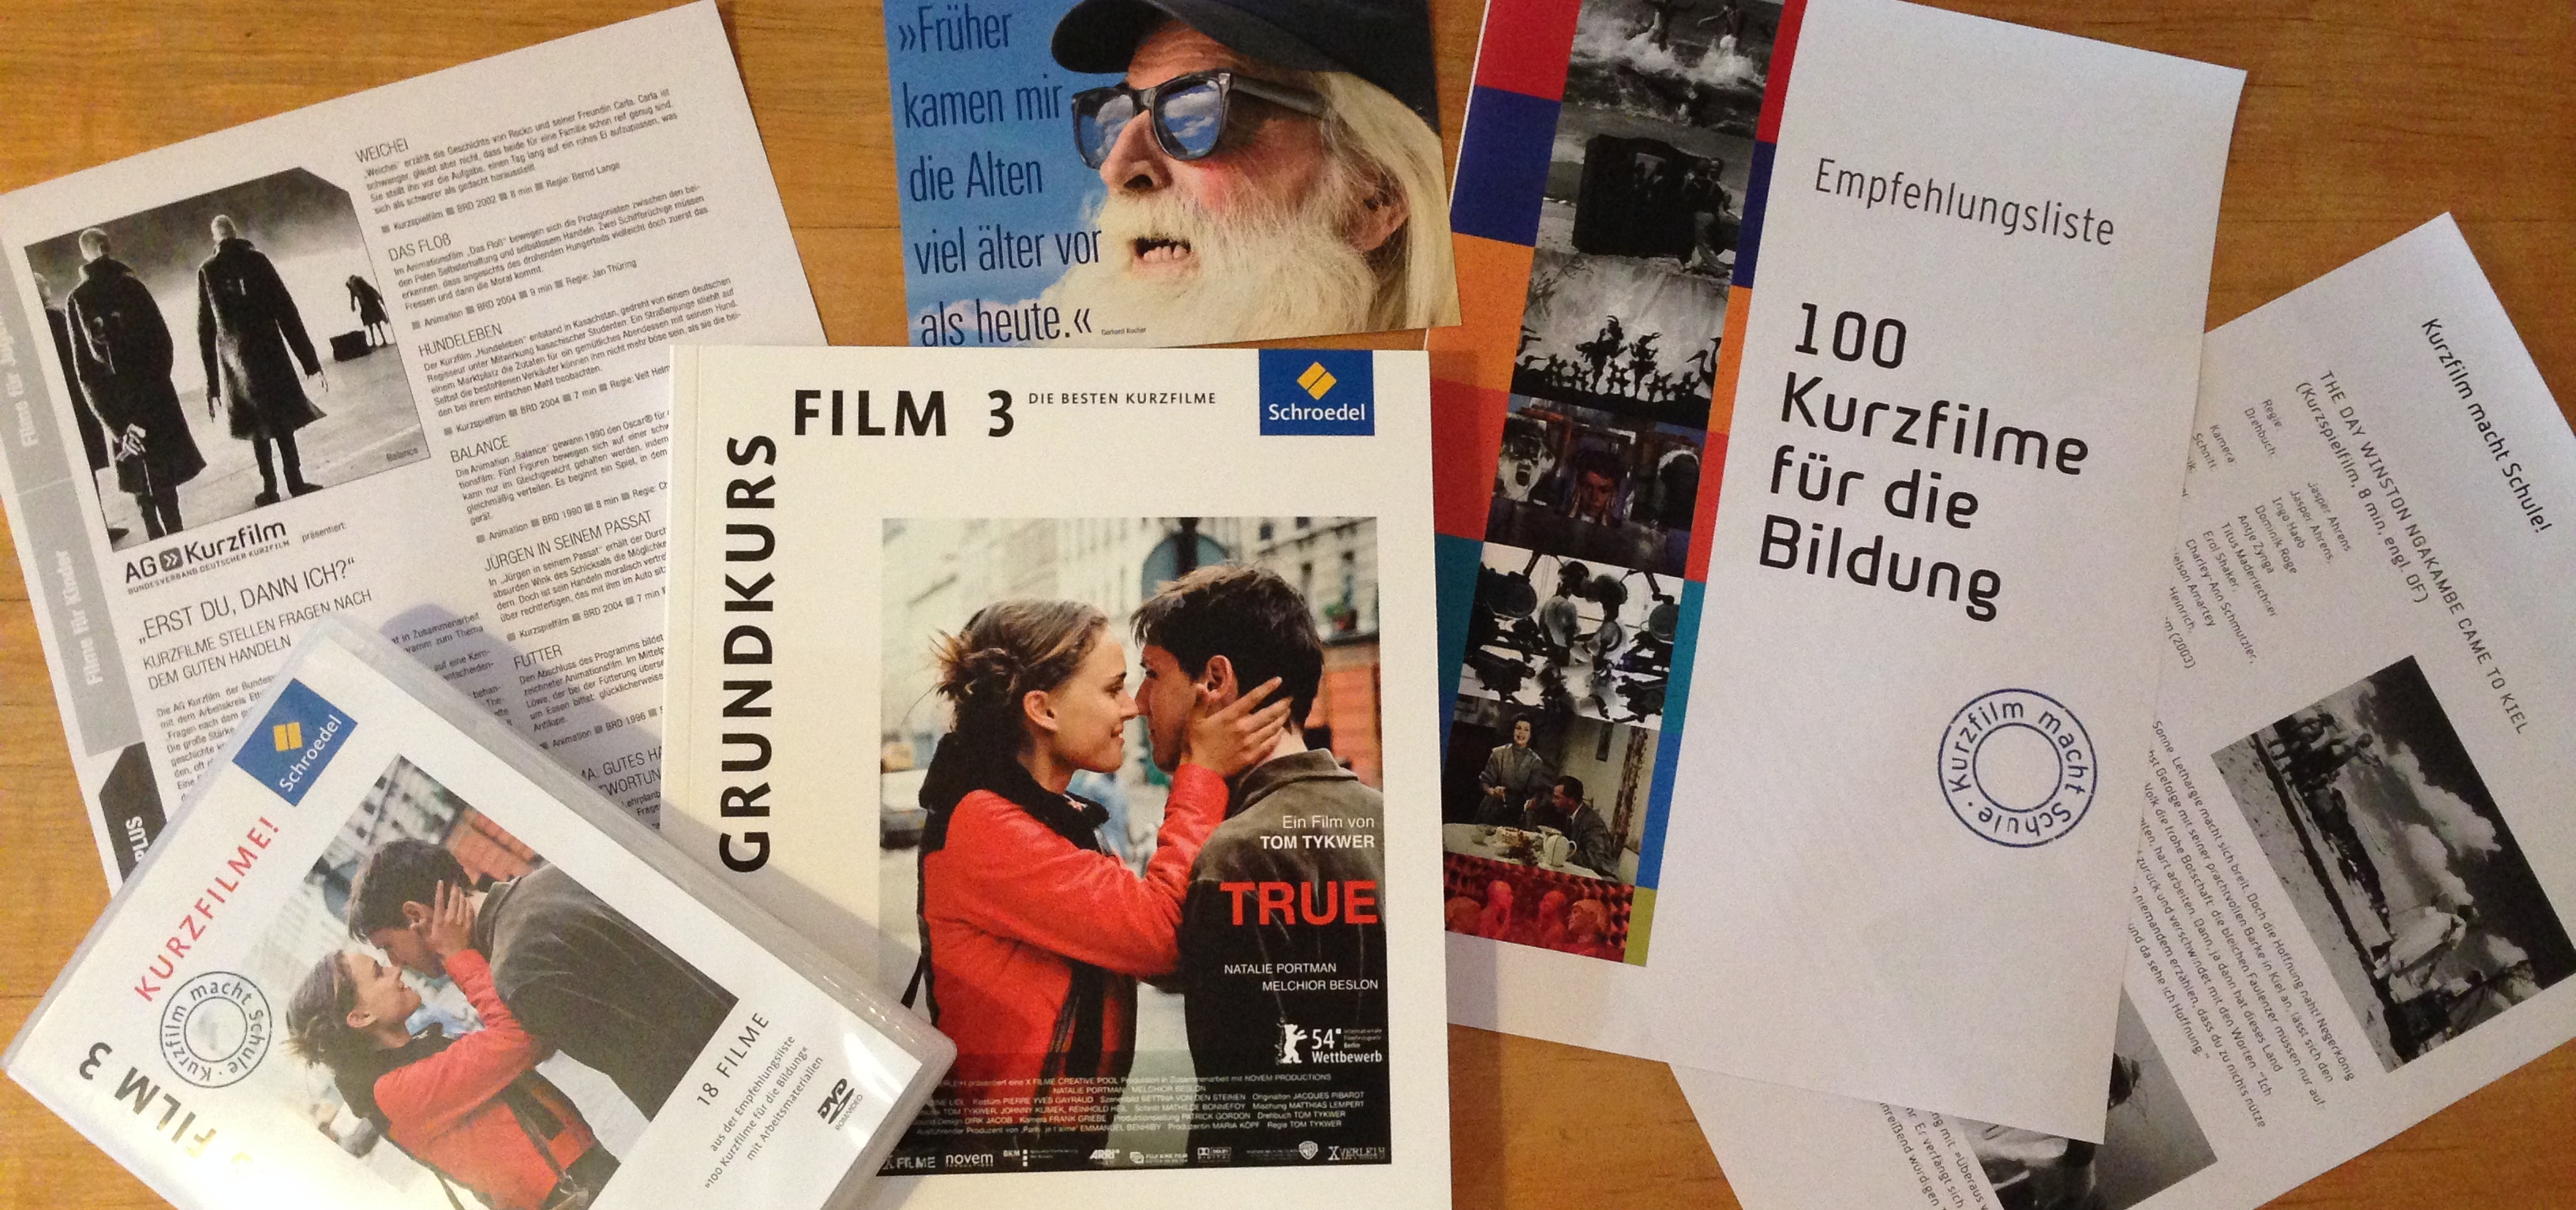 Auf einem Tisch liegen Hefte, Flyer und eine DVD ausgebreitet. Auf einem steht „100 Kurzfilme für die Bildung“.